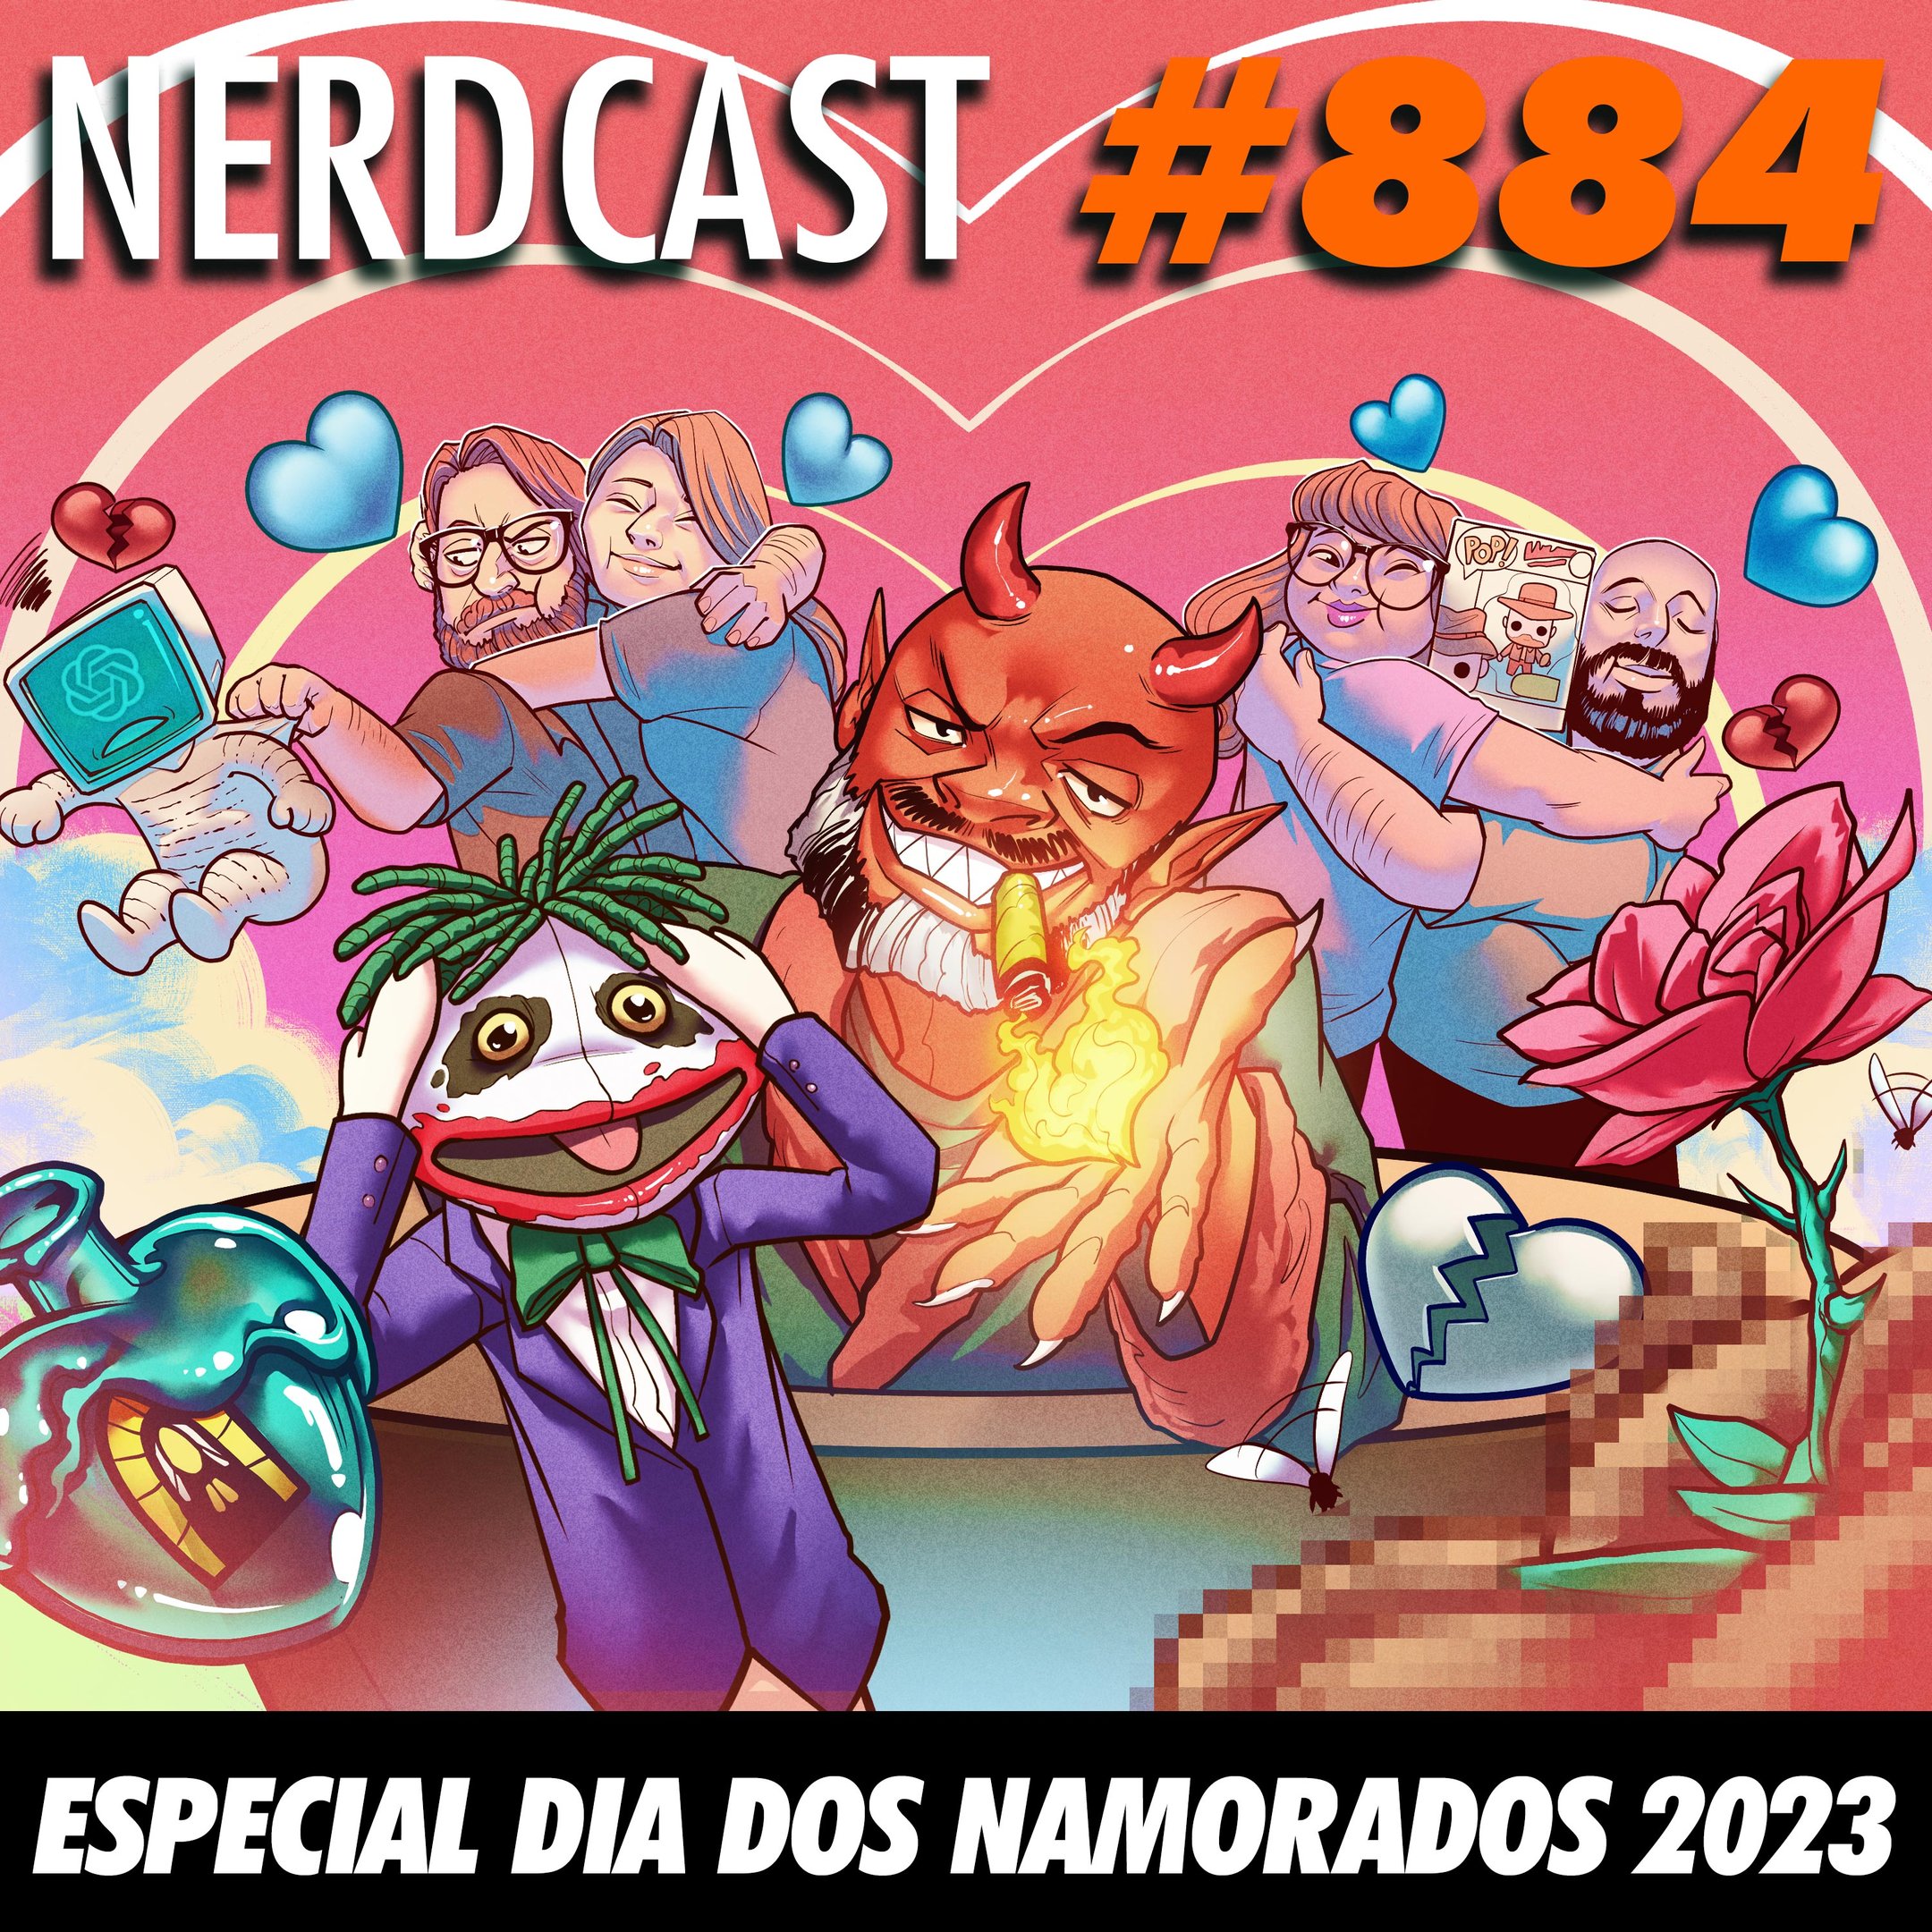 NerdCast 884 - Especial Dia dos Namorados 2023